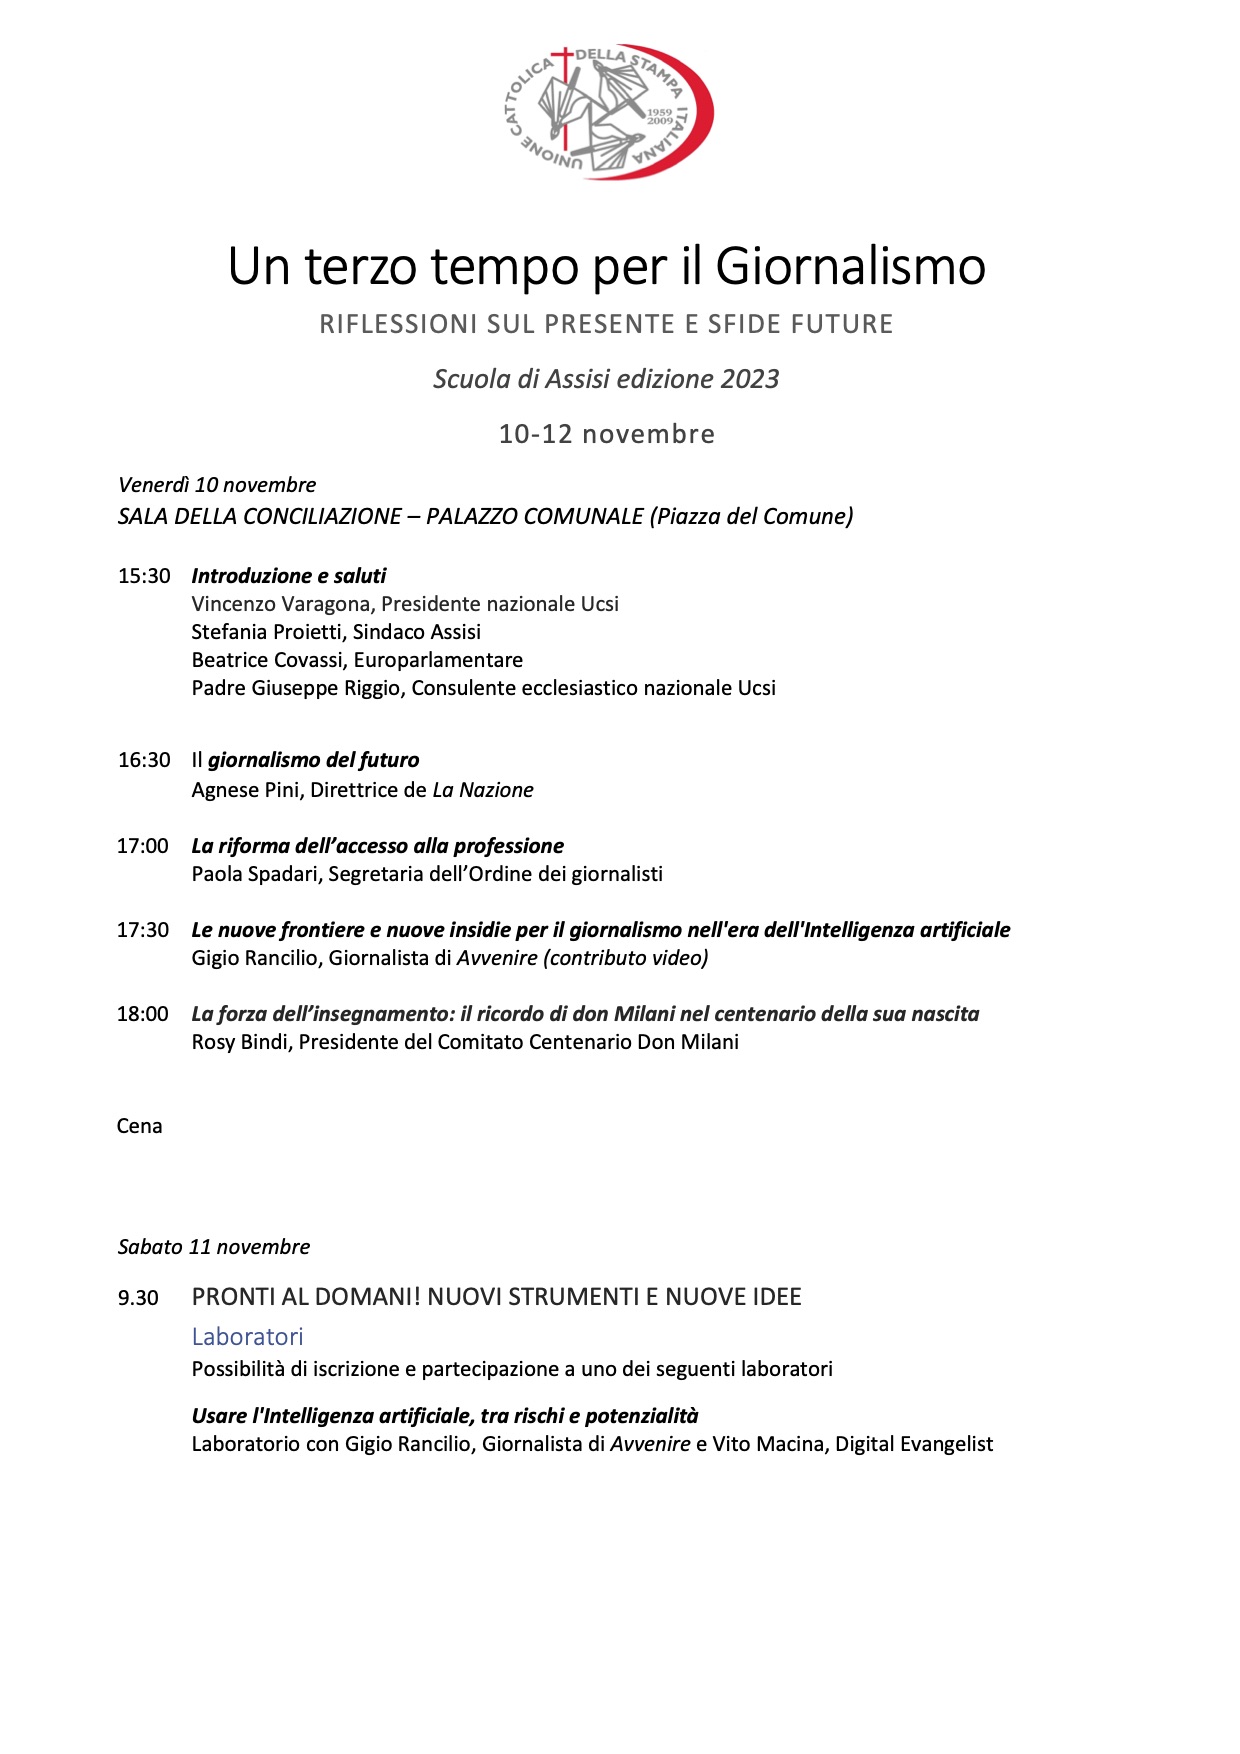 Ucsi Programma Scuola Assisi 2023